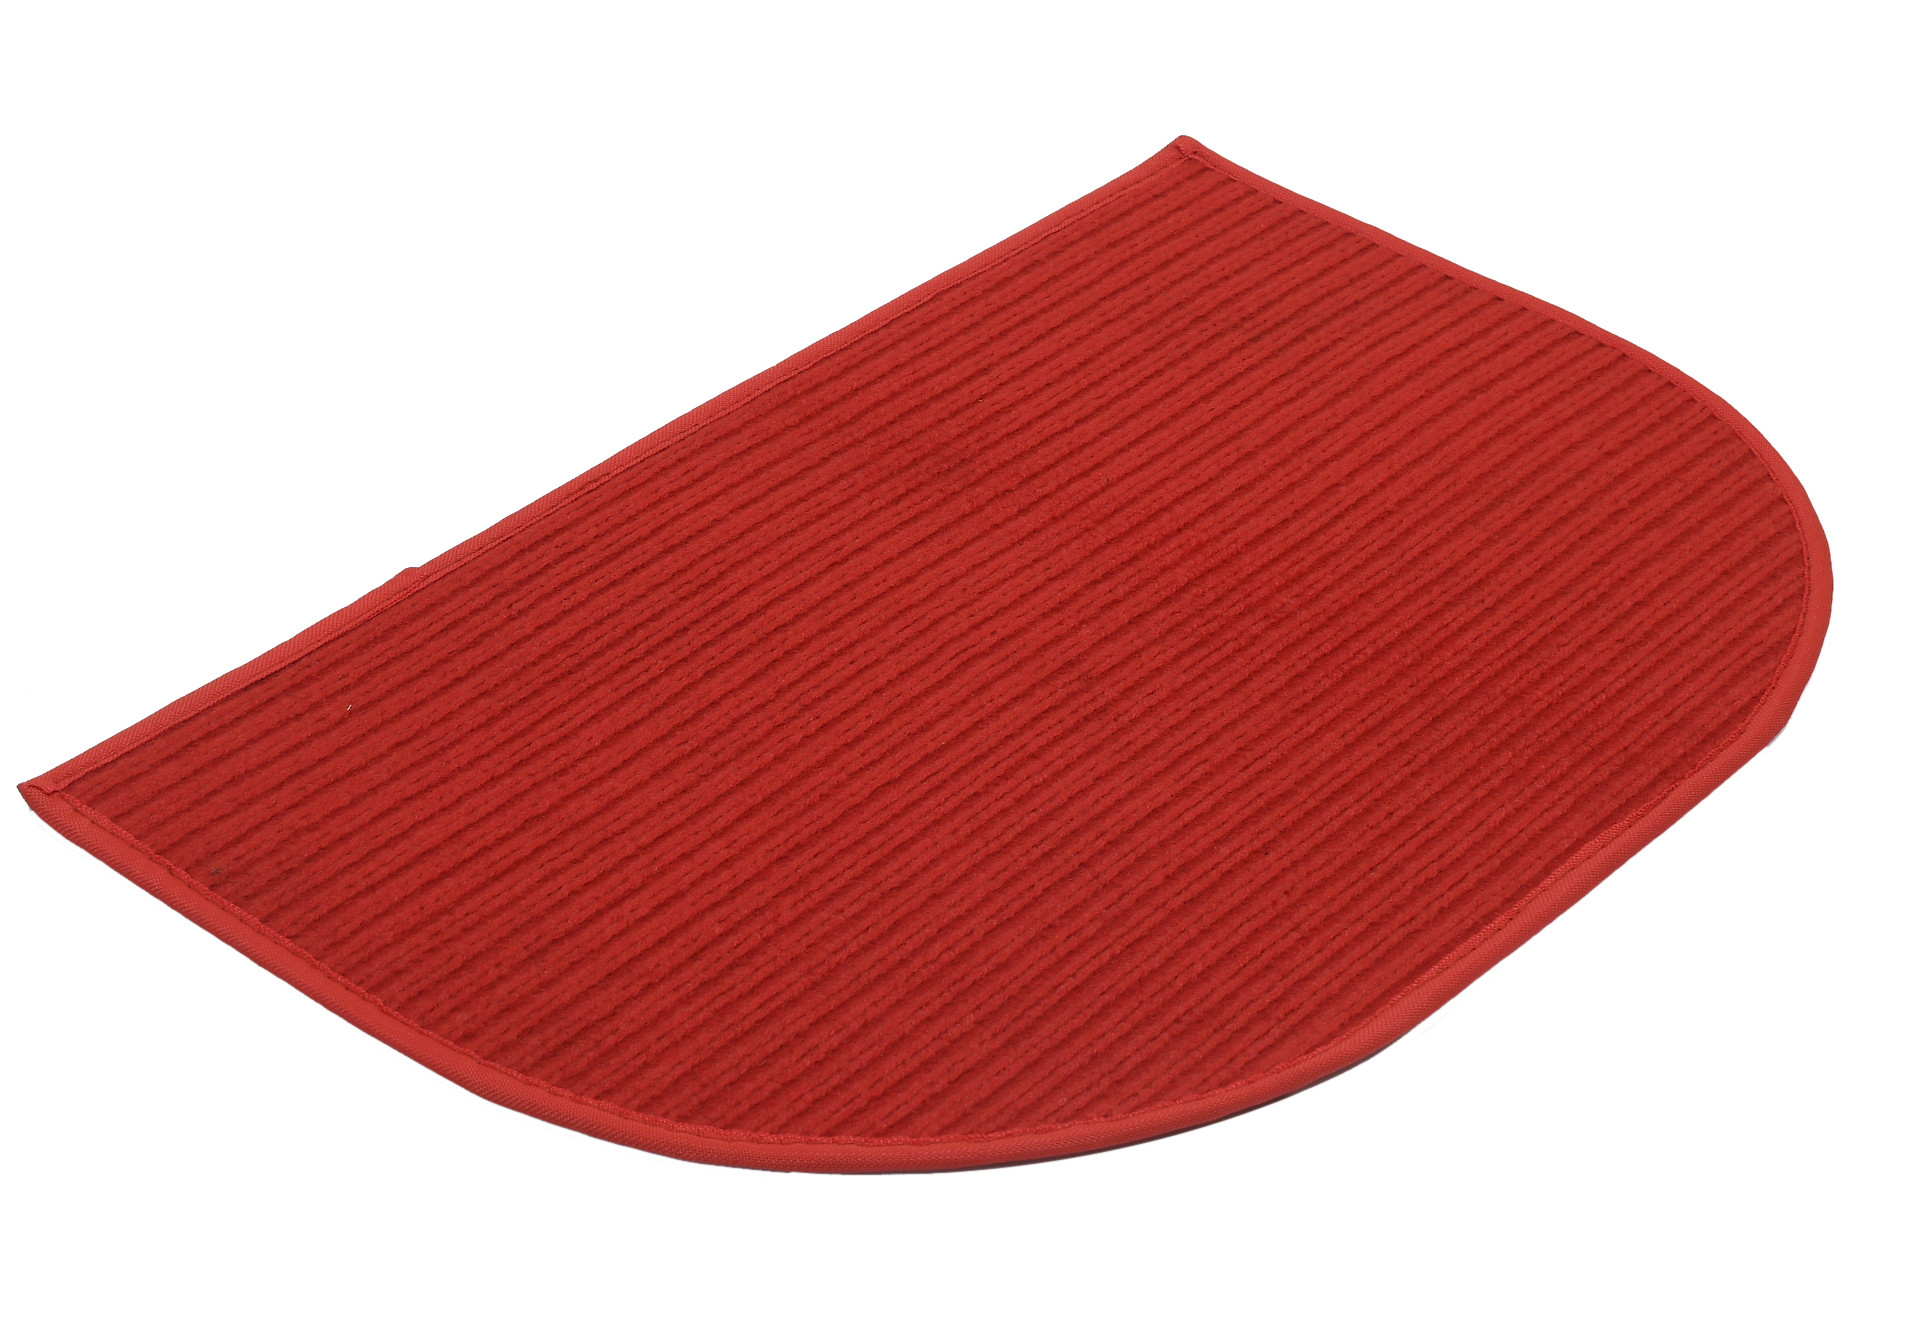 Kuber Industries D-Shape Durable Microfiber Door Mat, Heavy Duty Doormat, Indoor Outdoor, Easy Clean, Waterproof, Low-Profile Mats for Entry, Patio, Garage (14'' x 23'',Red)-KUBMRT12147